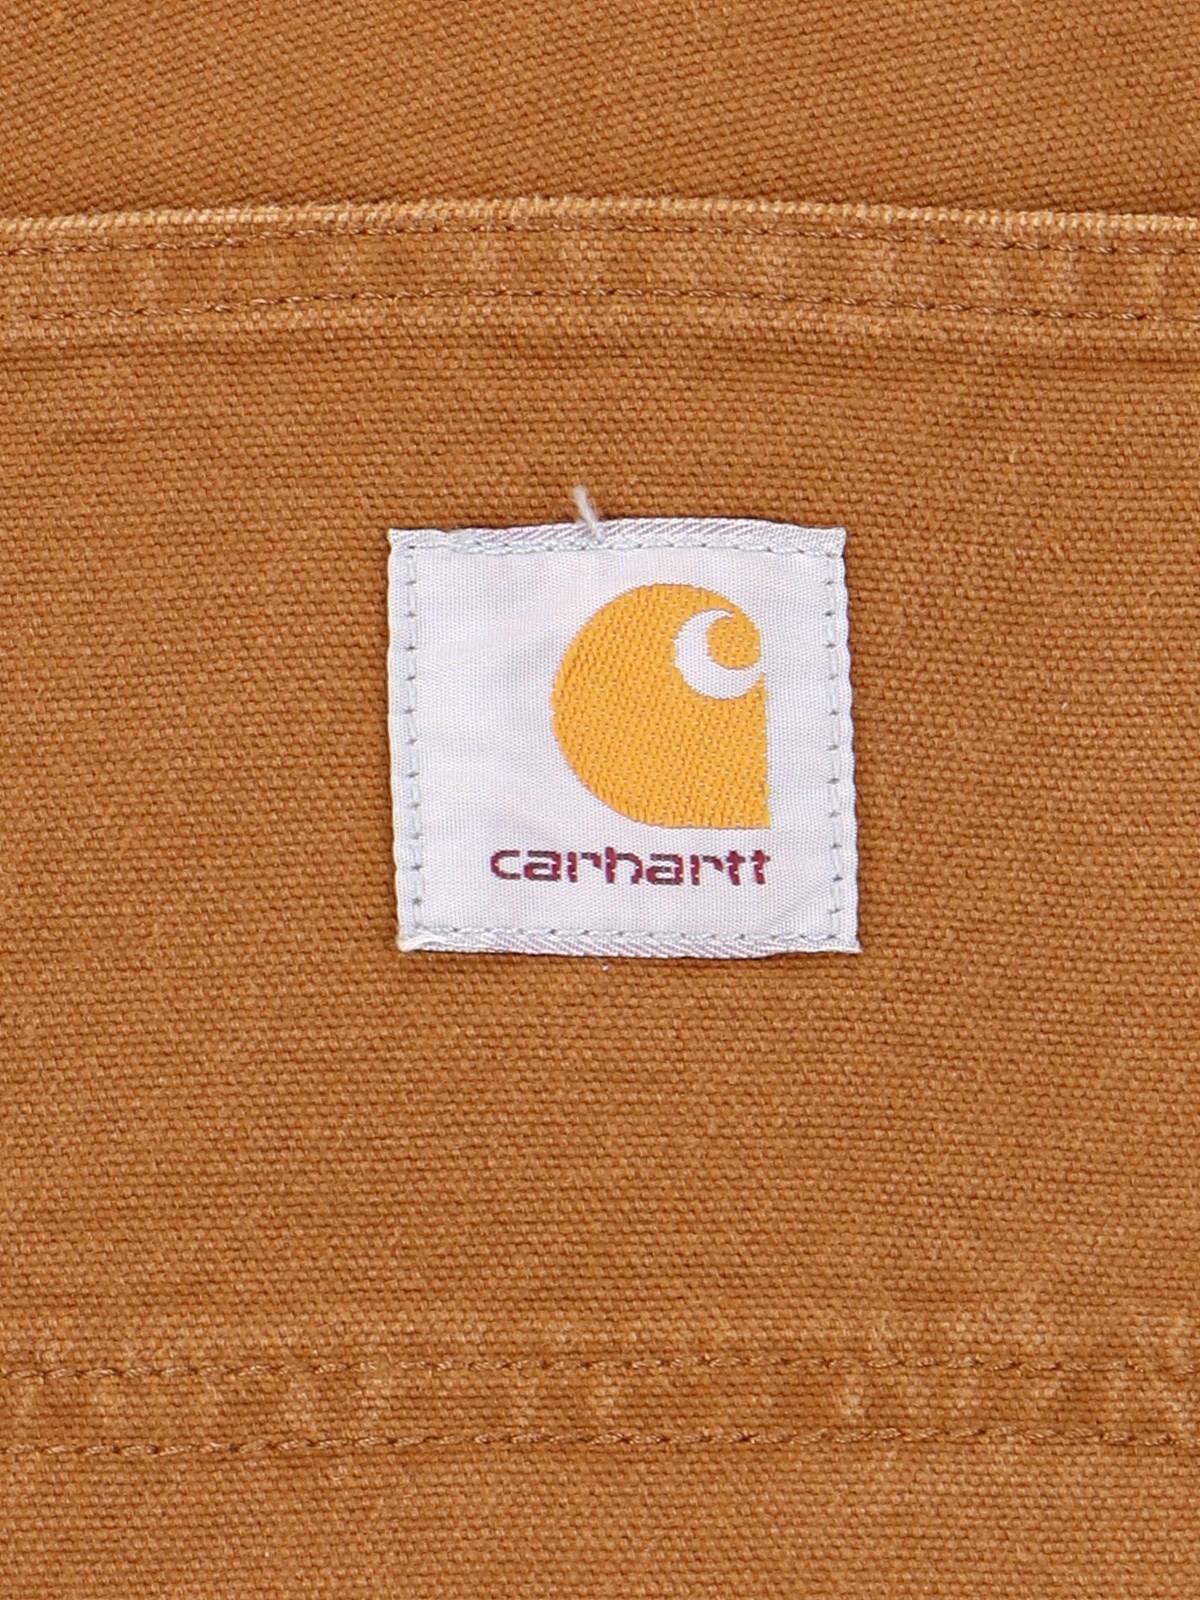 Carhartt Single Knee Pants In Brown